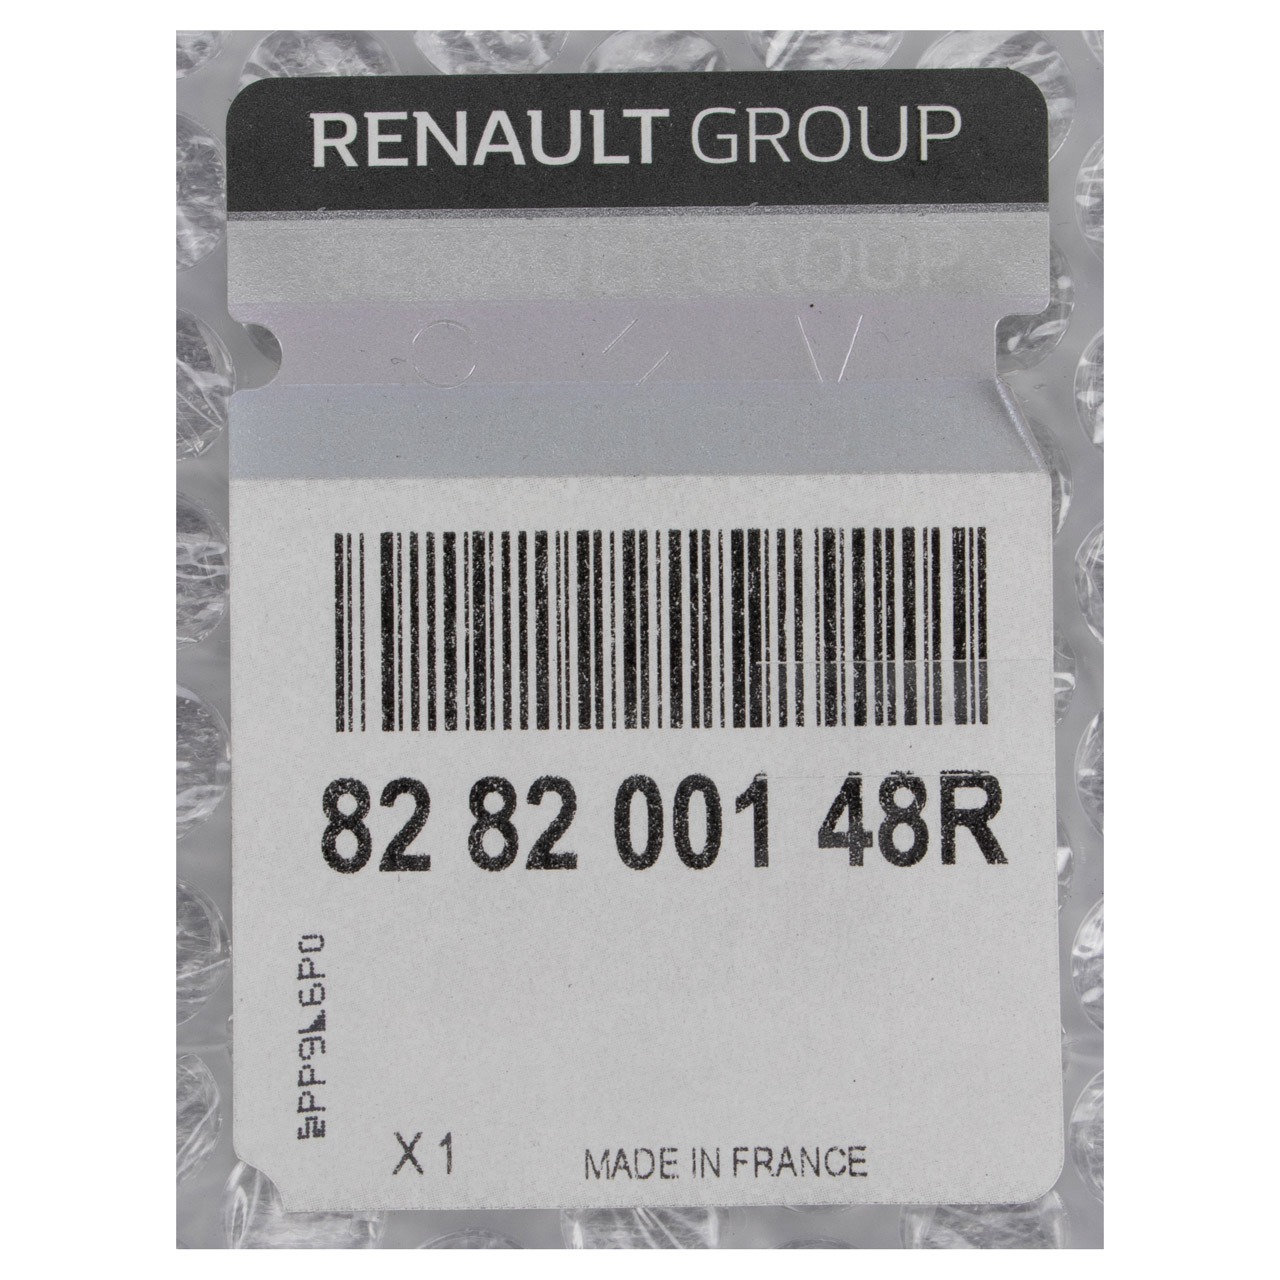 ORIGINAL Renault Seitenleiste mitte rechts Master 3 mit langer Radstand 828200148R